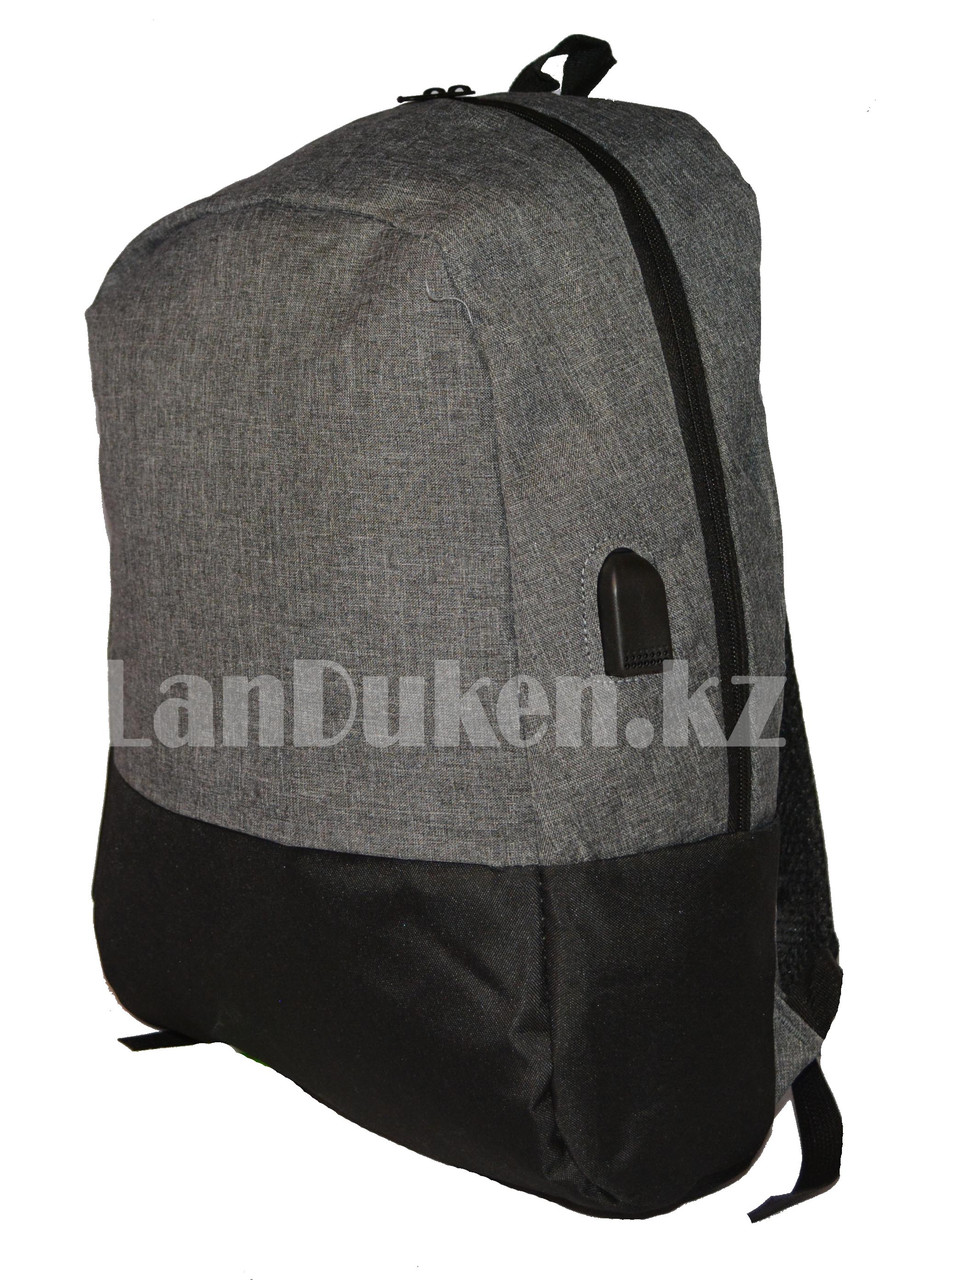 Городской рюкзак с USB портом, серый с черным, фото 1